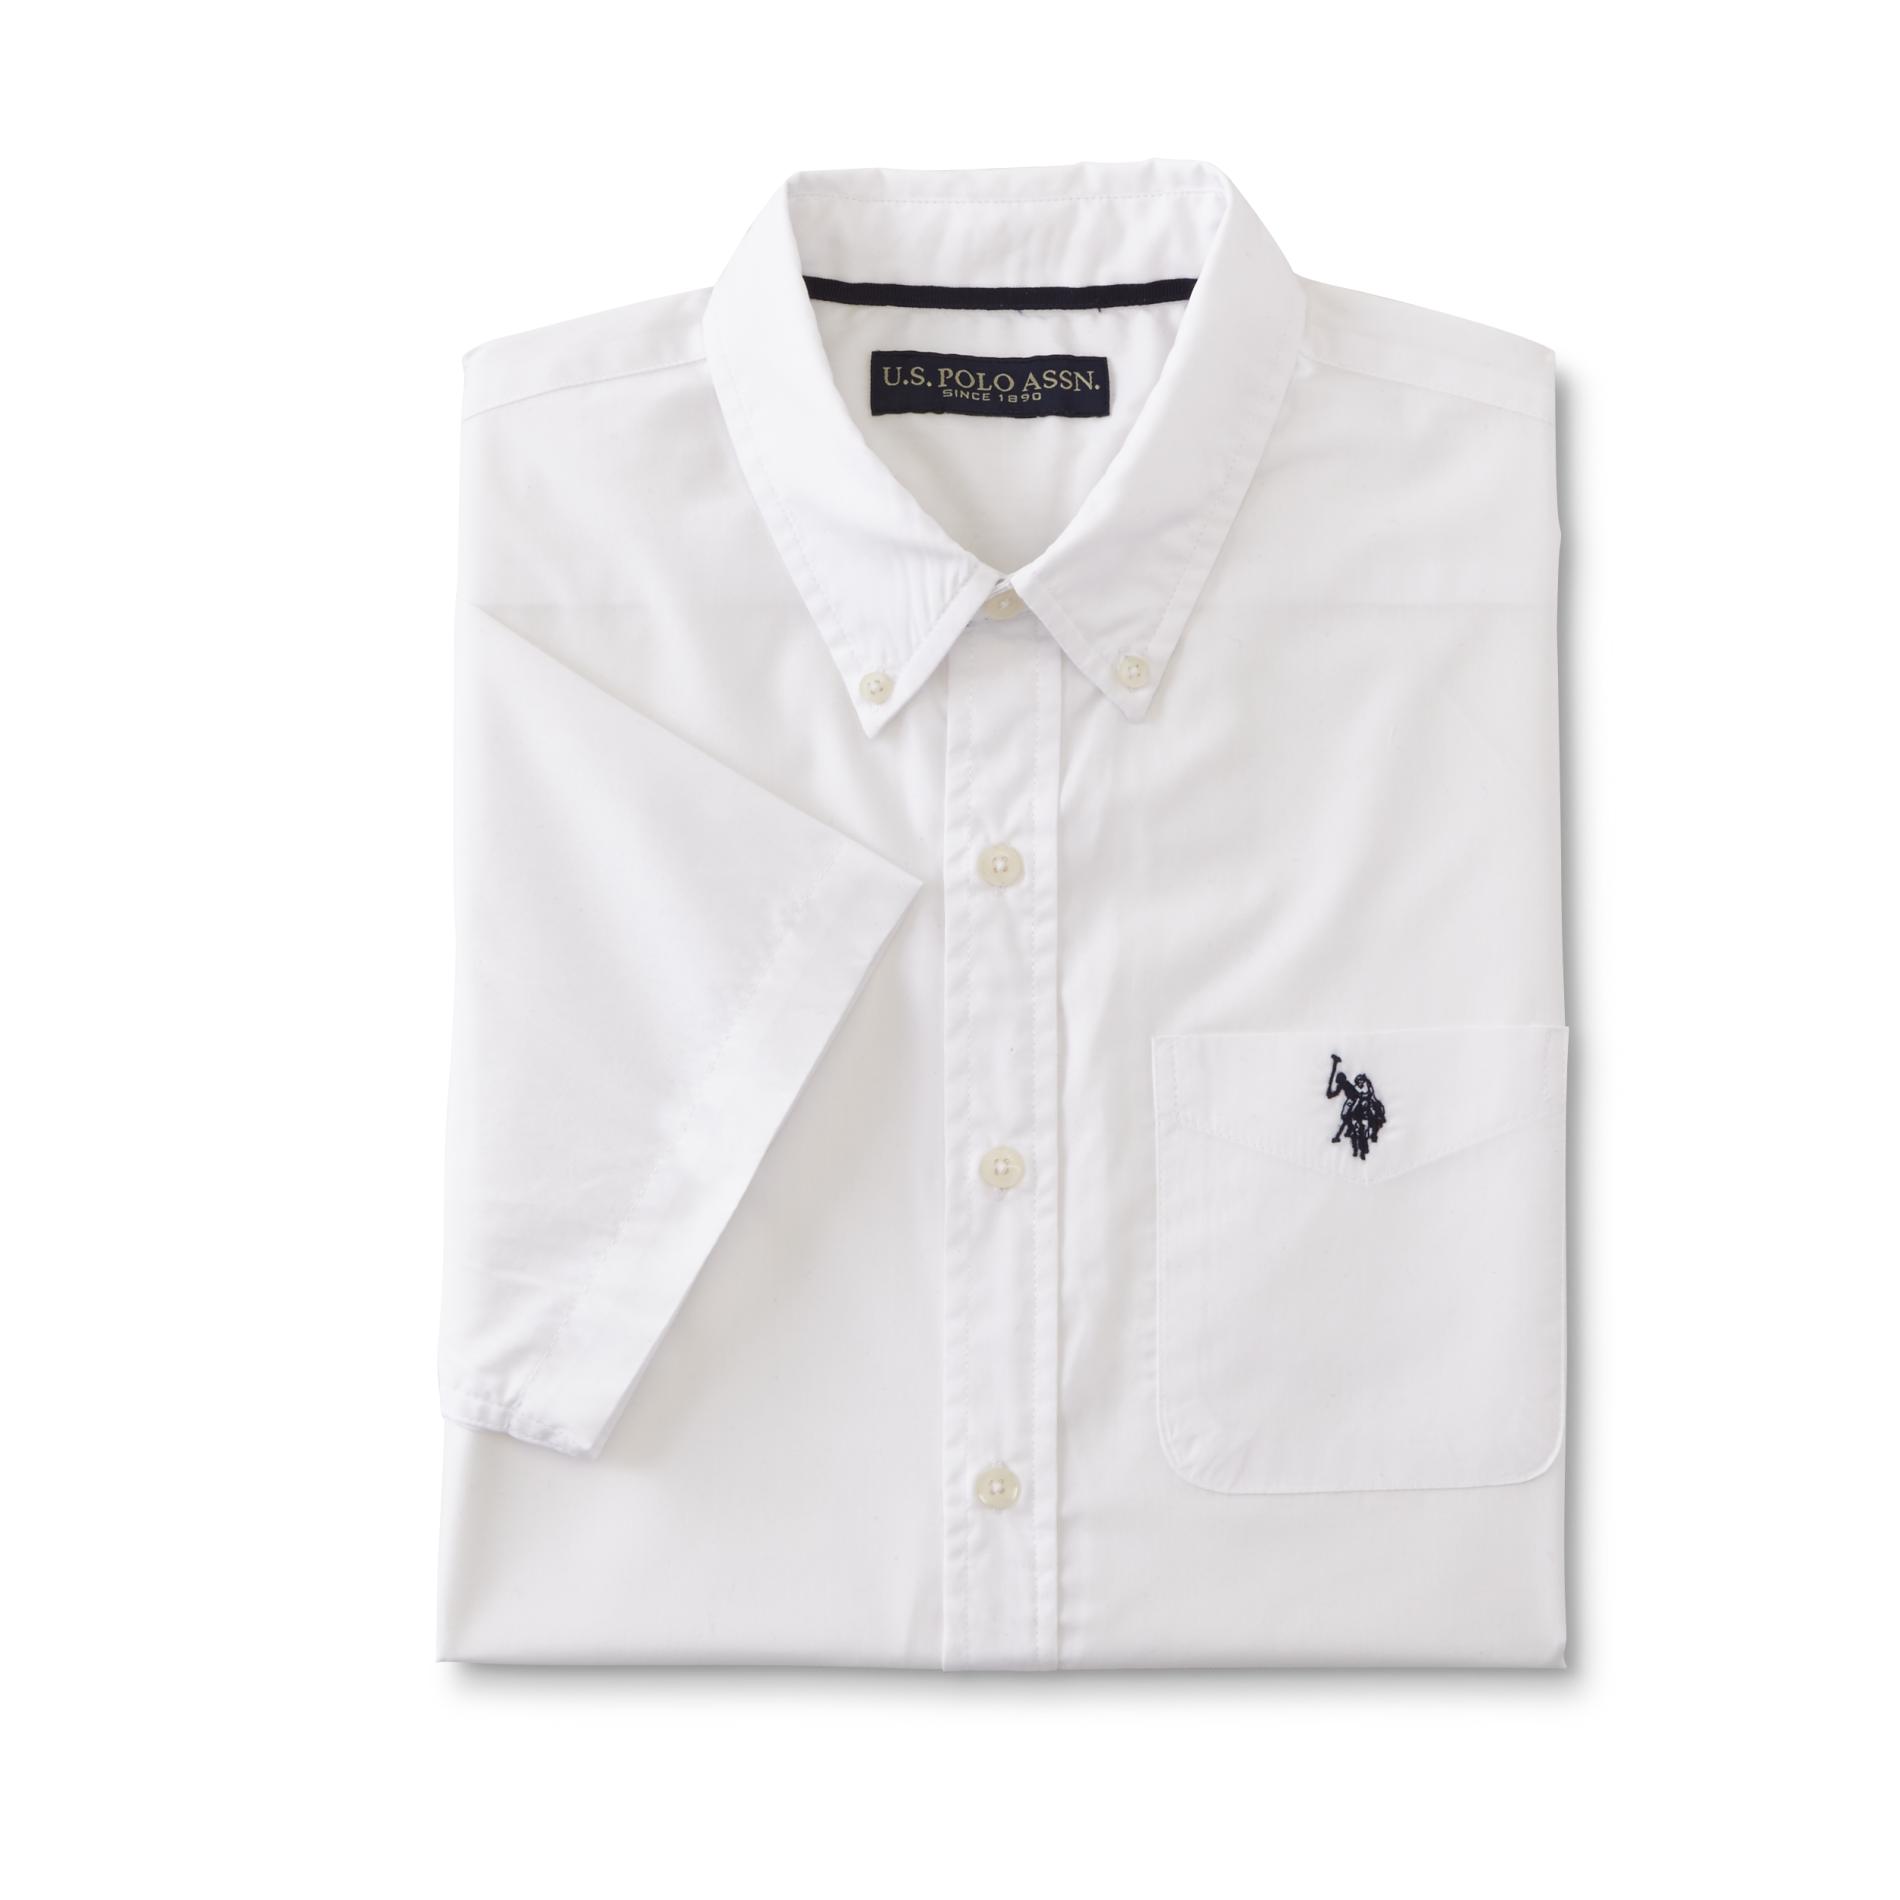 U.S. Polo Assn. Men's Short-Sleeve Shirt